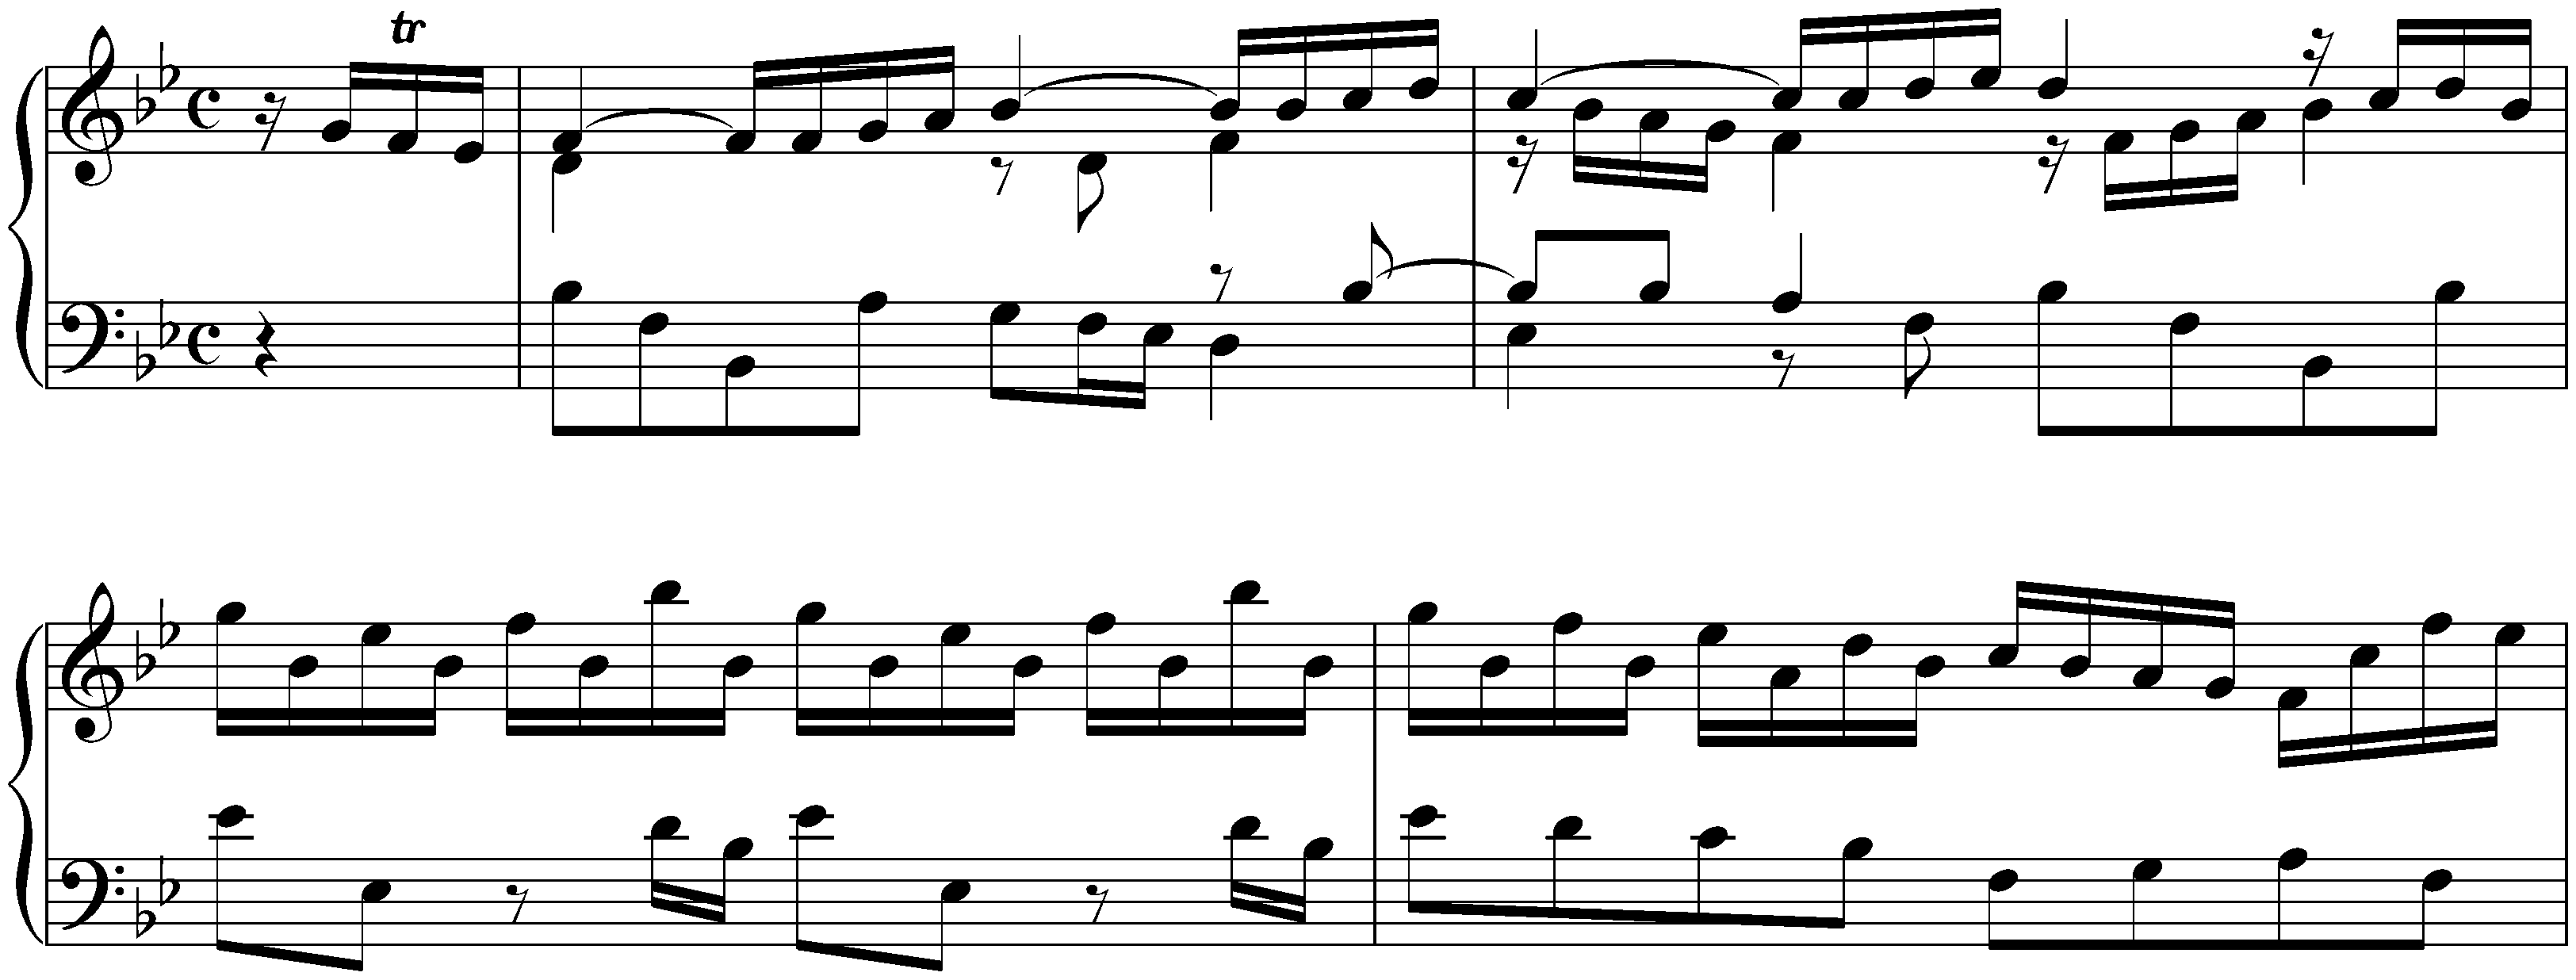 Suite in B-flat major, HWV 440; 1. Allemande (first version)